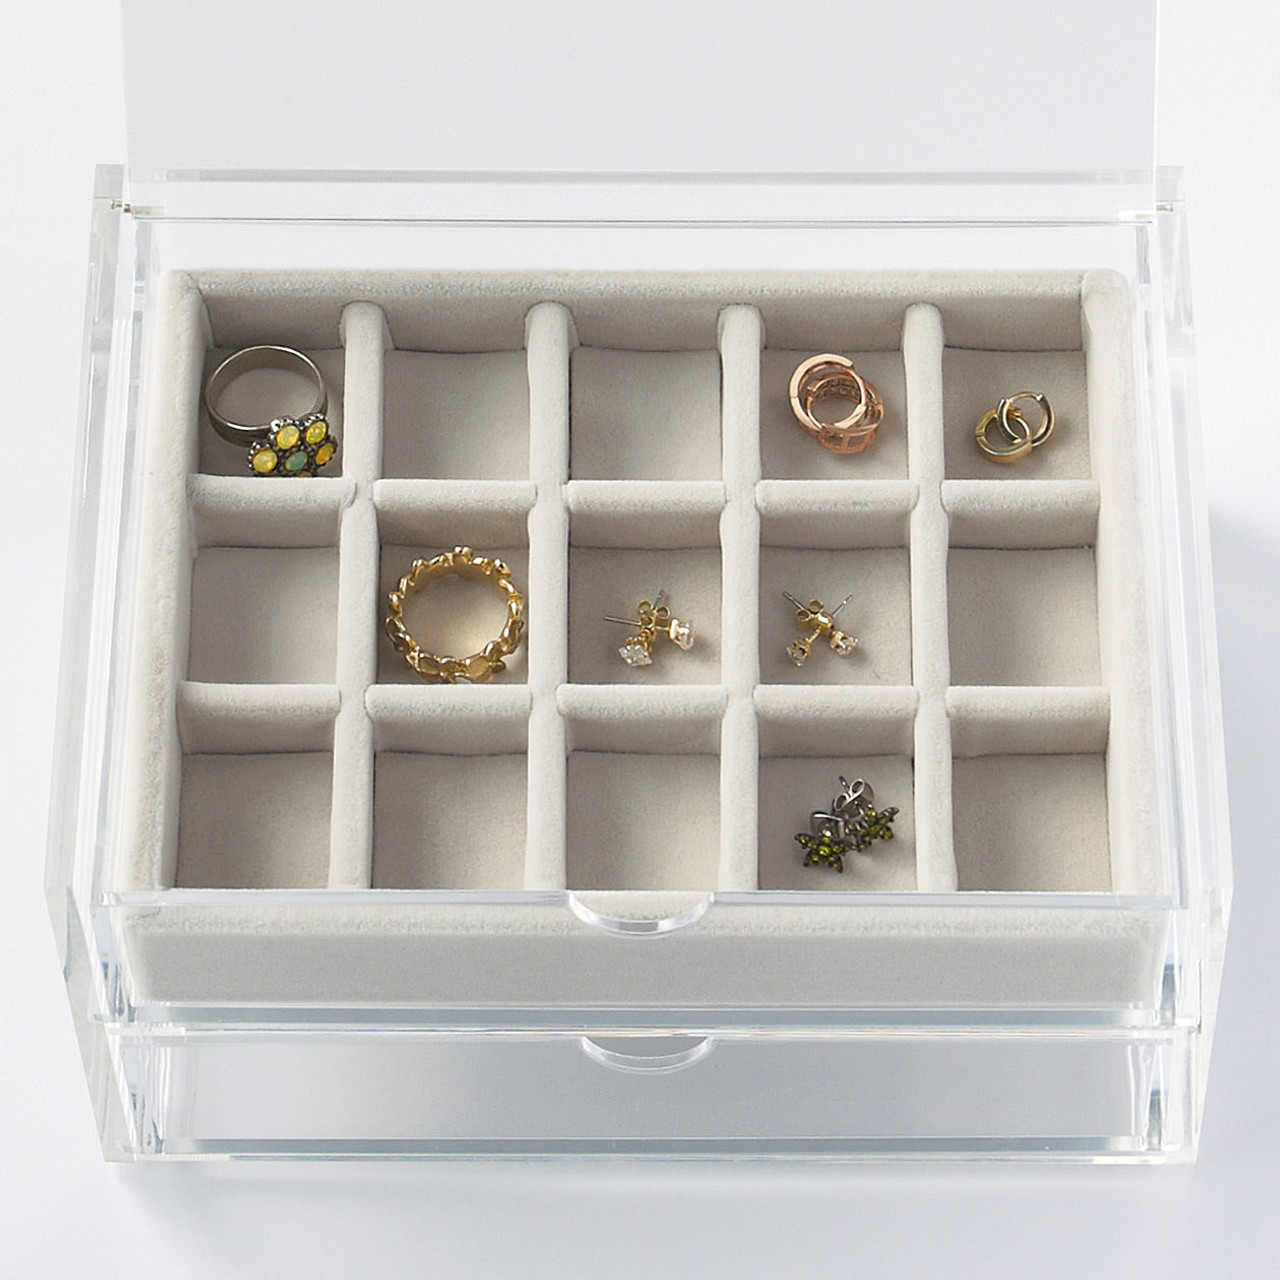 Presentoir bijoux plateau à 12 compartiments en velours